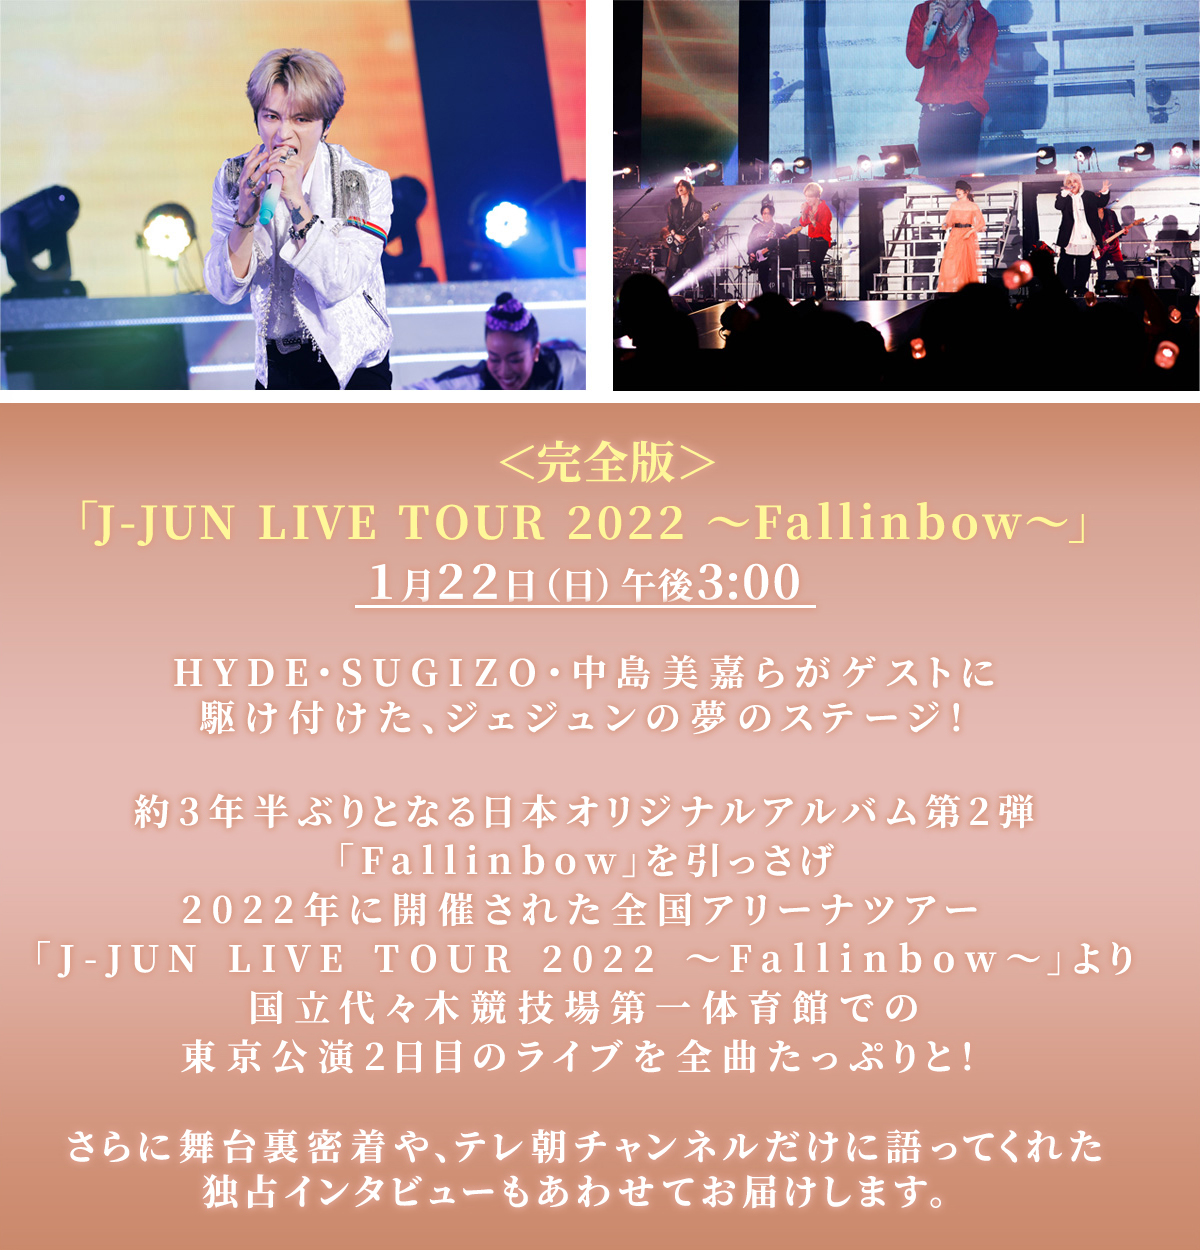 ＜完全版＞​「J-JUN LIVE TOUR 2022 ～Fallinbow～」​1月22日（日）午後3:00​HYDE・SUGIZO・中島美嘉らがゲストに駆け付けた、ジェジュンの夢のステージ！​約3年半ぶりとなる日本オリジナルアルバム第2弾「Fallinbow」を引っさげ​2022年に開催された全国アリーナツアー​「J-JUN LIVE TOUR 2022 ～Fallinbow～」より​国立代々木競技場第一体育館での東京公演2日目のライブを全曲たっぷりと！​さらに舞台裏や、テレ朝チャンネルだけに語ってくれたインタビューもあわせてお届けします。​